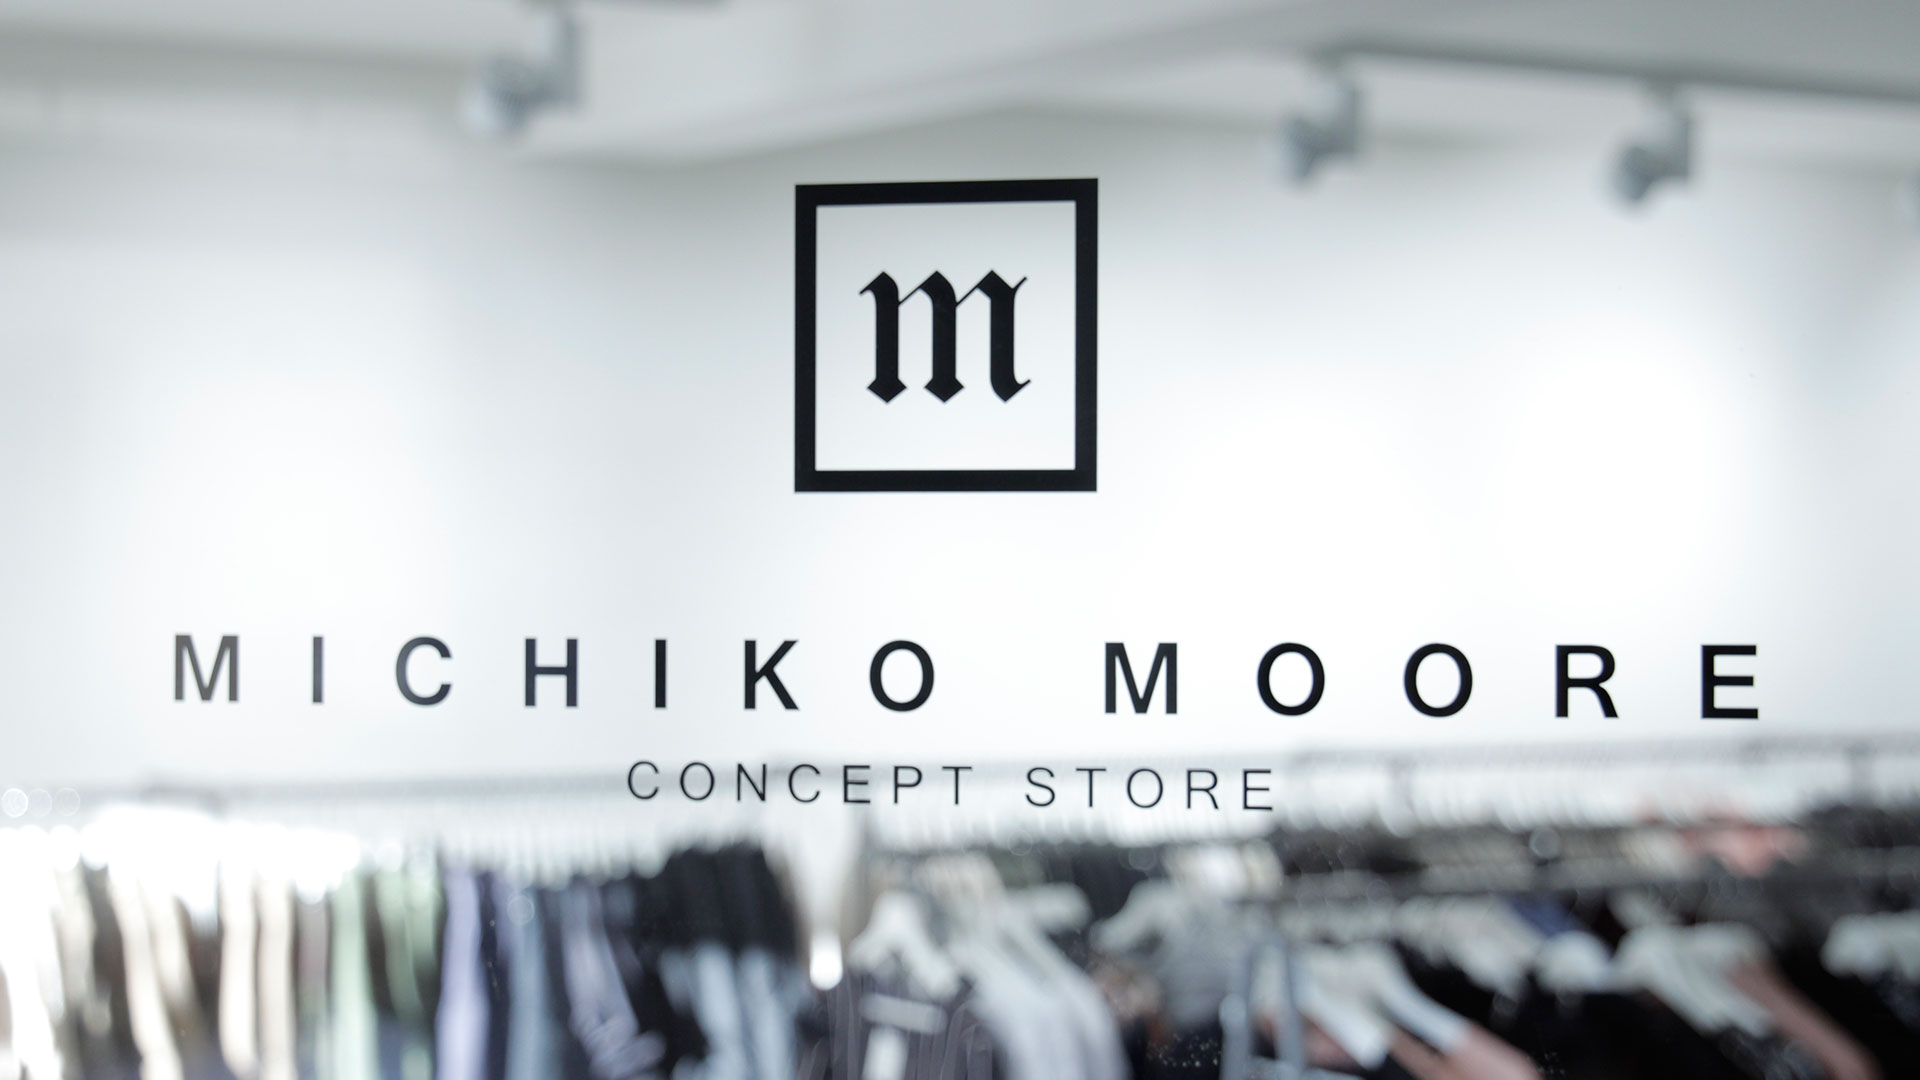 Bild zur Videoproduktion für den Michiko Moore Concept Store Schweinfurt